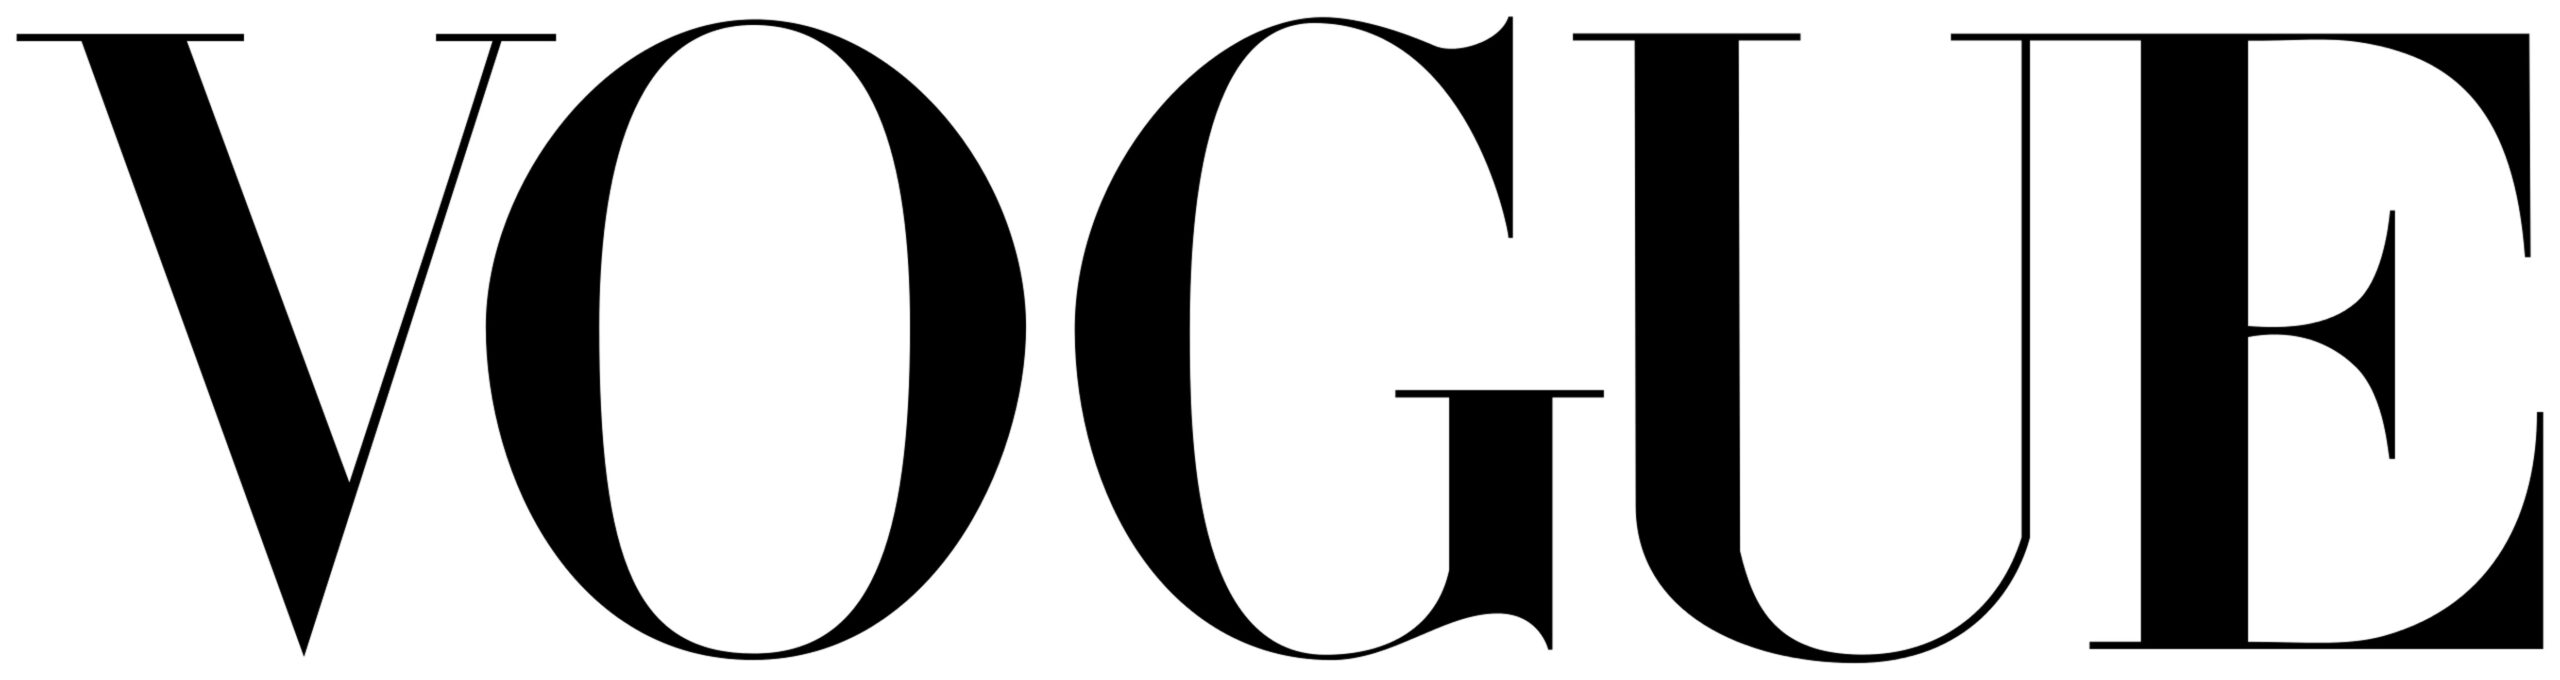 54 Vogue Logo